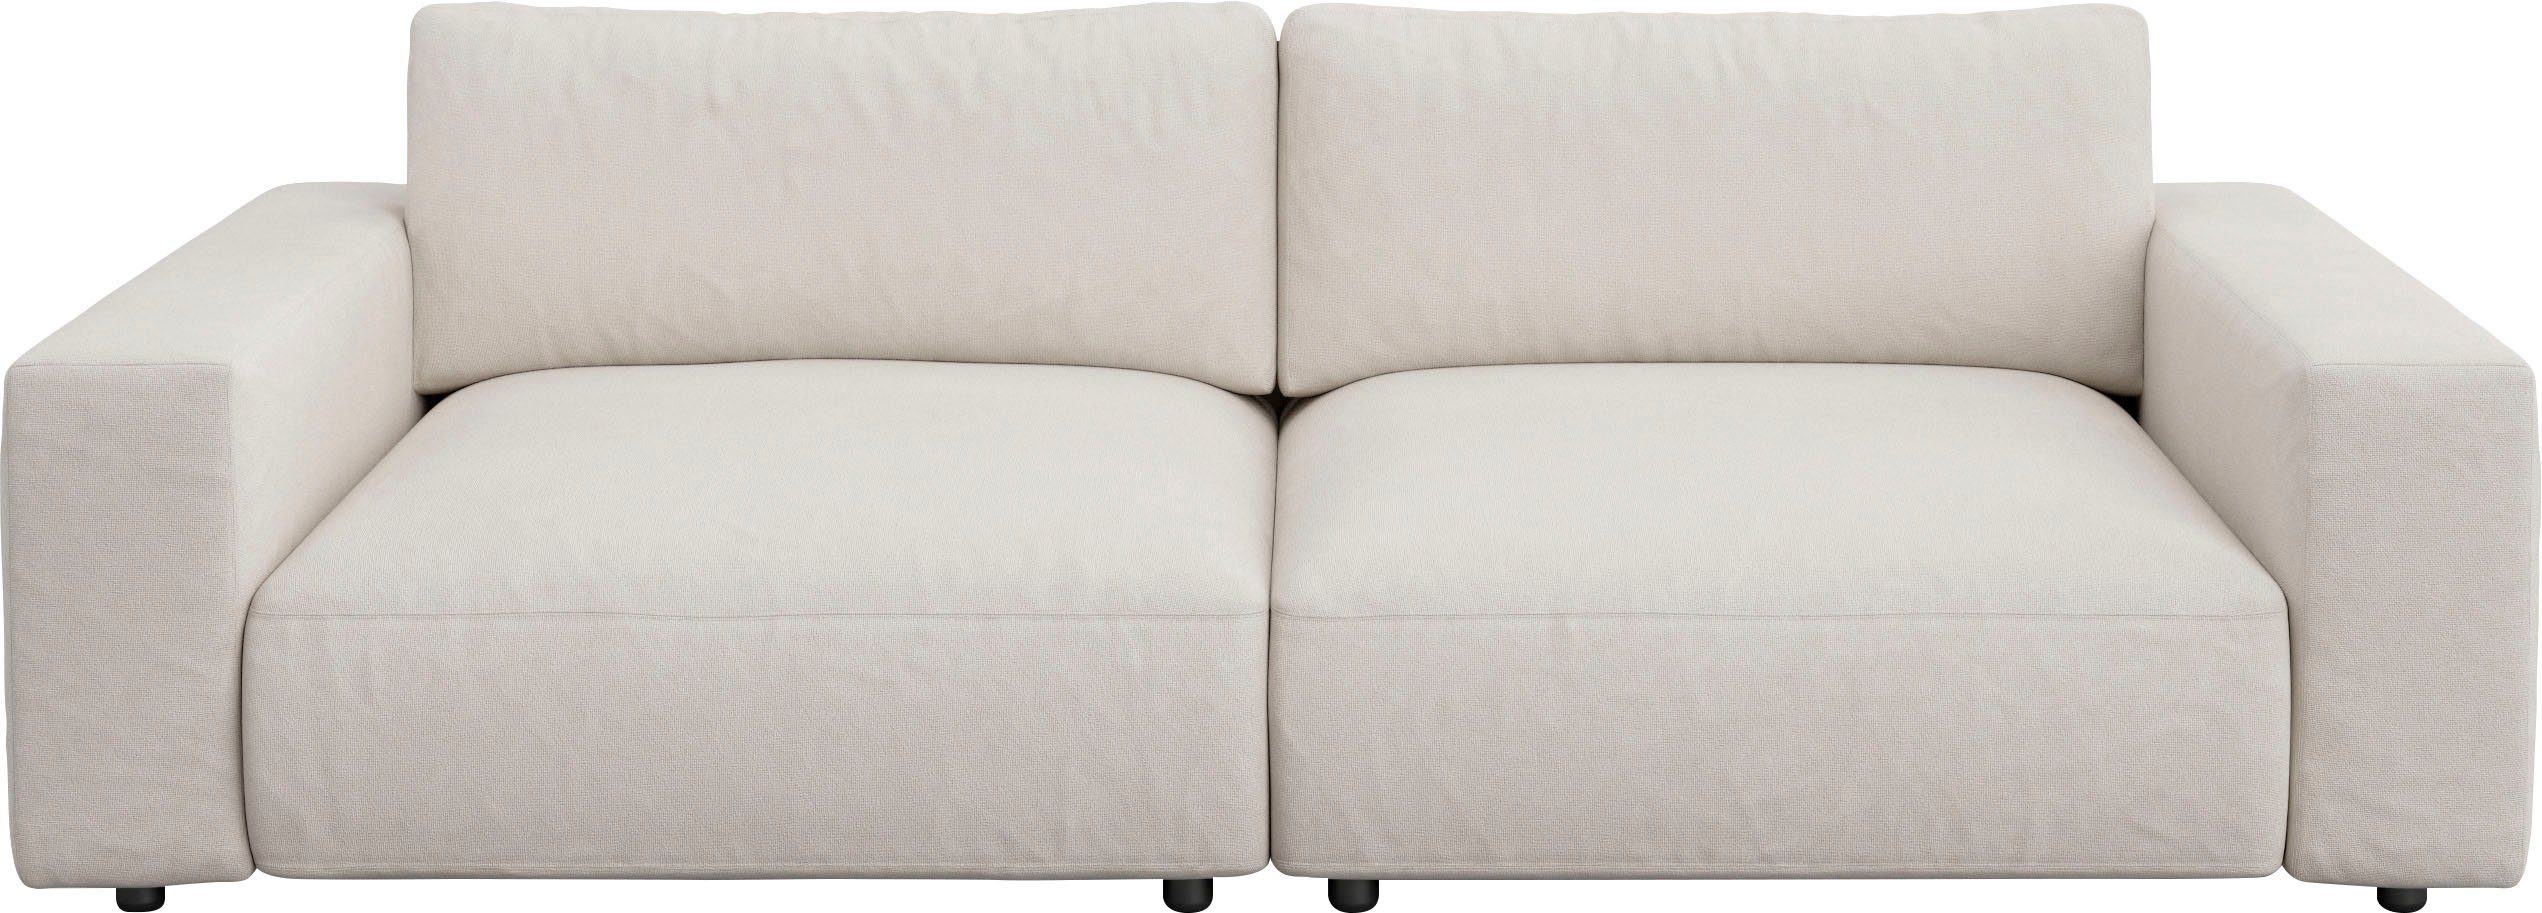 LUCIA, unterschiedlichen GALLERY 4 und branded M Qualitäten in Big-Sofa by Musterring 2,5-Sitzer Nähten, vielen